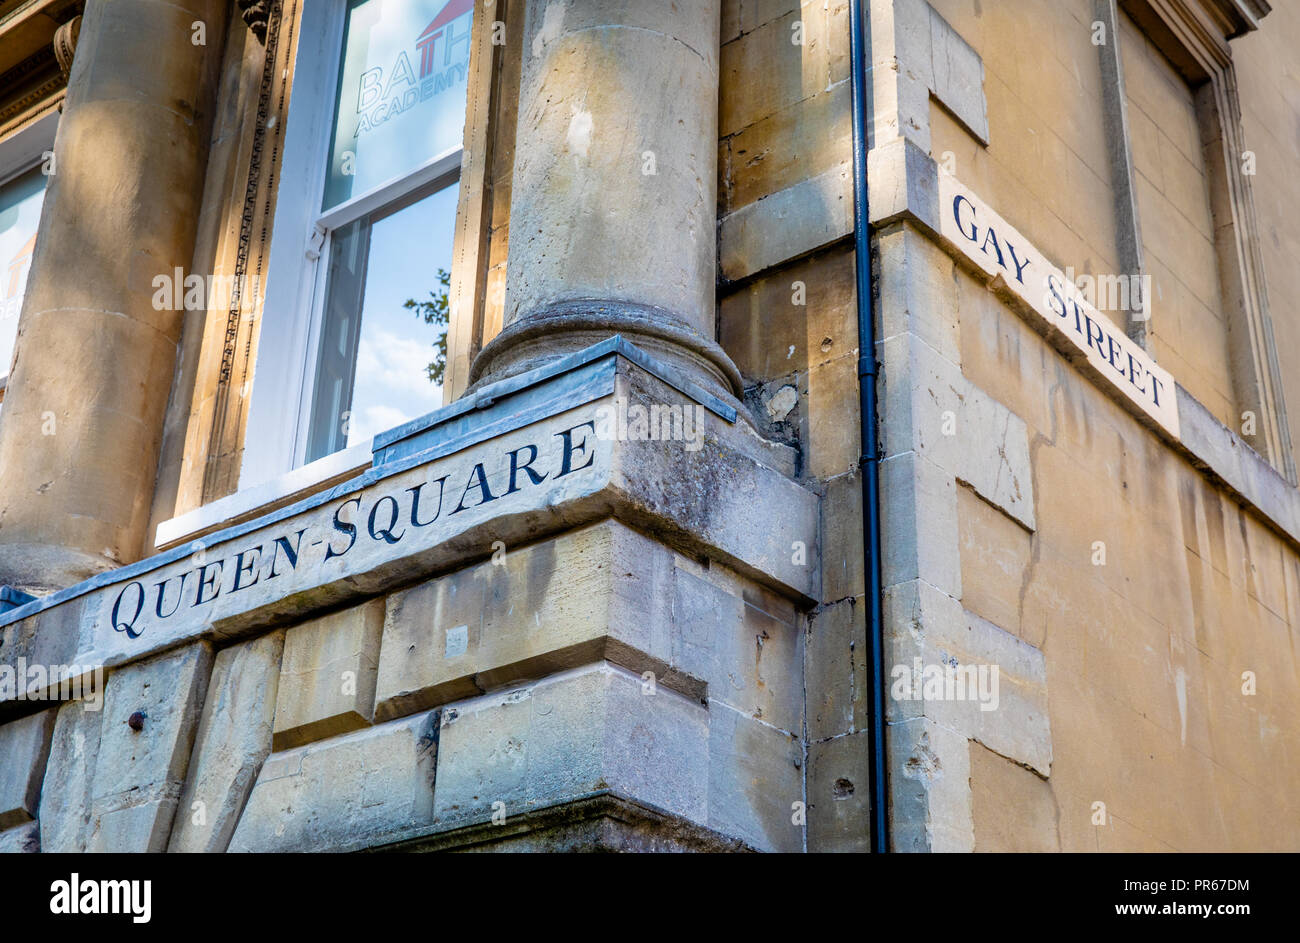 Esquina de Queen Square y Gay Street en Bath UK nombrado en el siglo XVIII era Georgiana antes de cualquier significado alternativo o insinuación estaba implícita Foto de stock